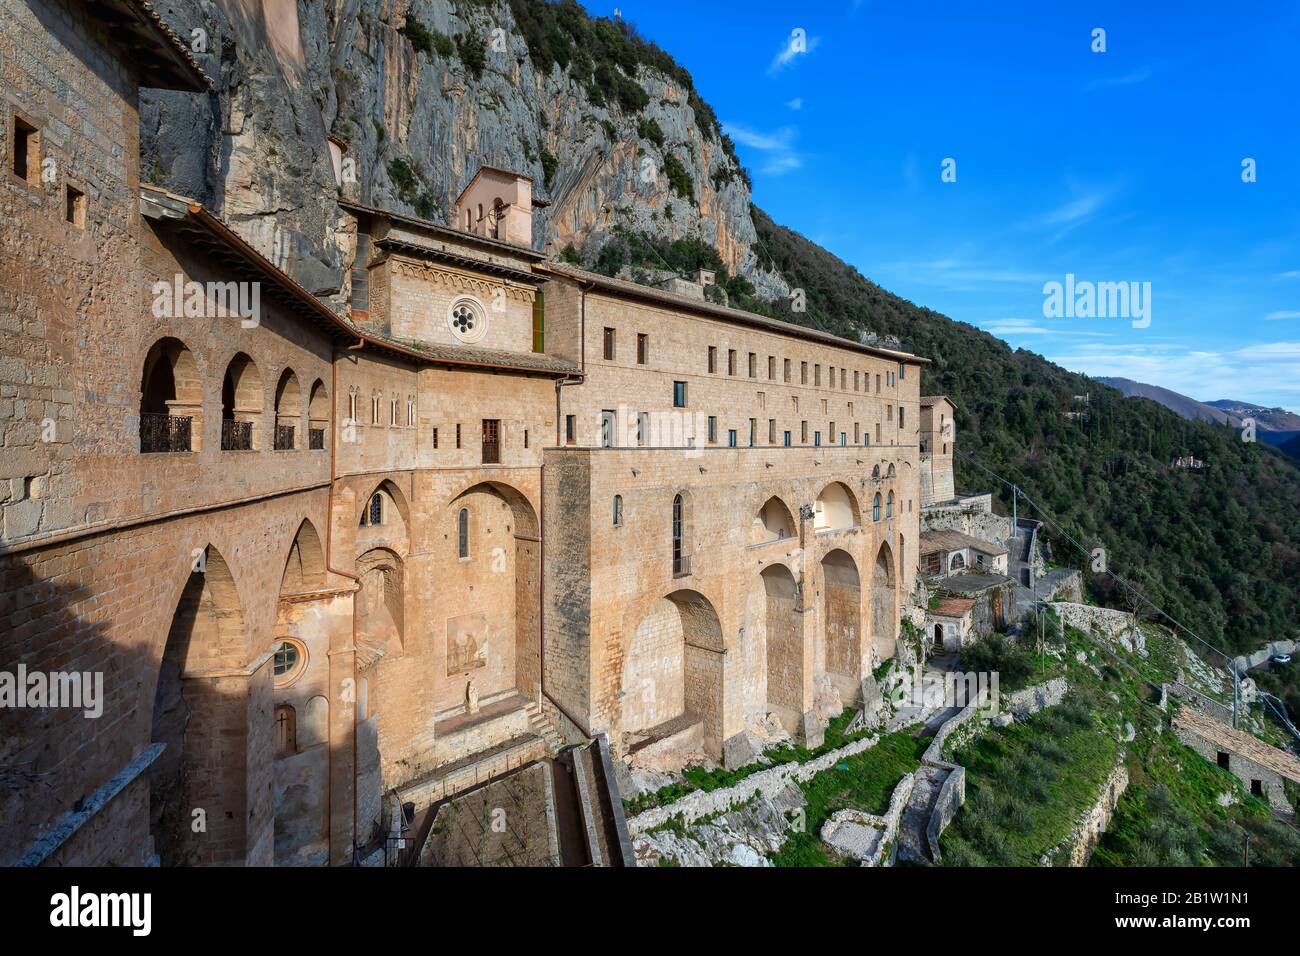 Kloster San Benedetto oder Heiligtum von Sacro Speco, einem alten Kloster der Benediktion, das sich auf dem Gebiet von Subiaco in der Nähe von Rom, Italien befindet. Stockfoto